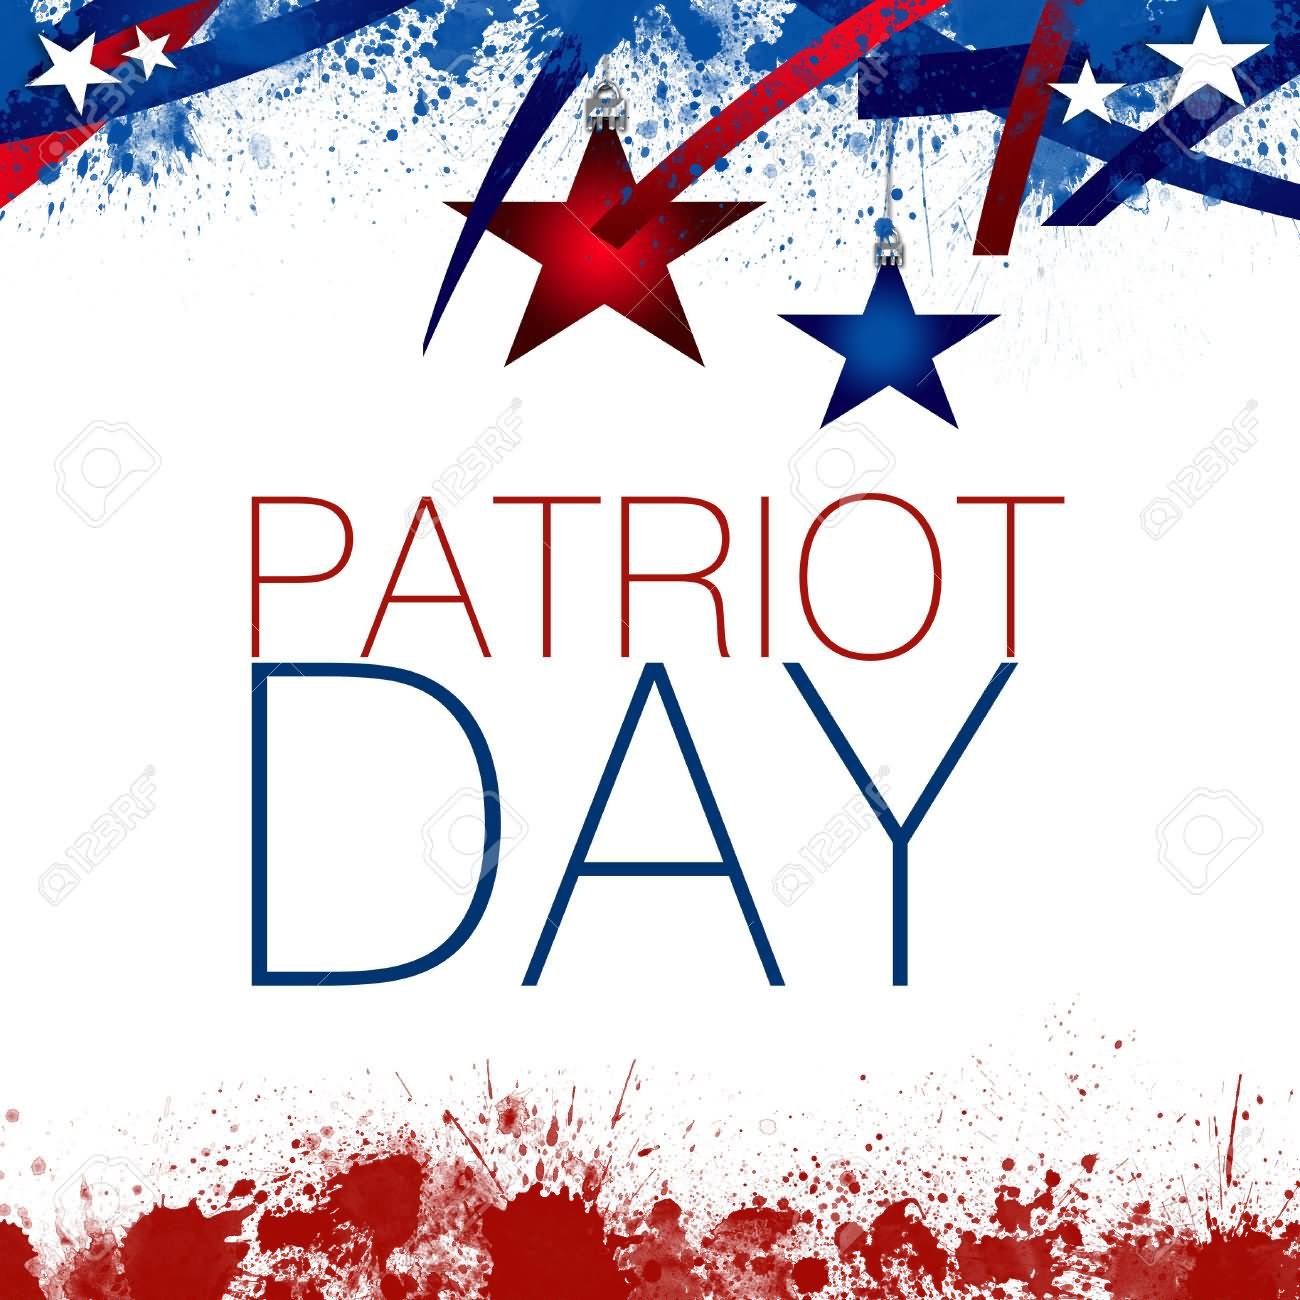 Happy Patriot’s Day